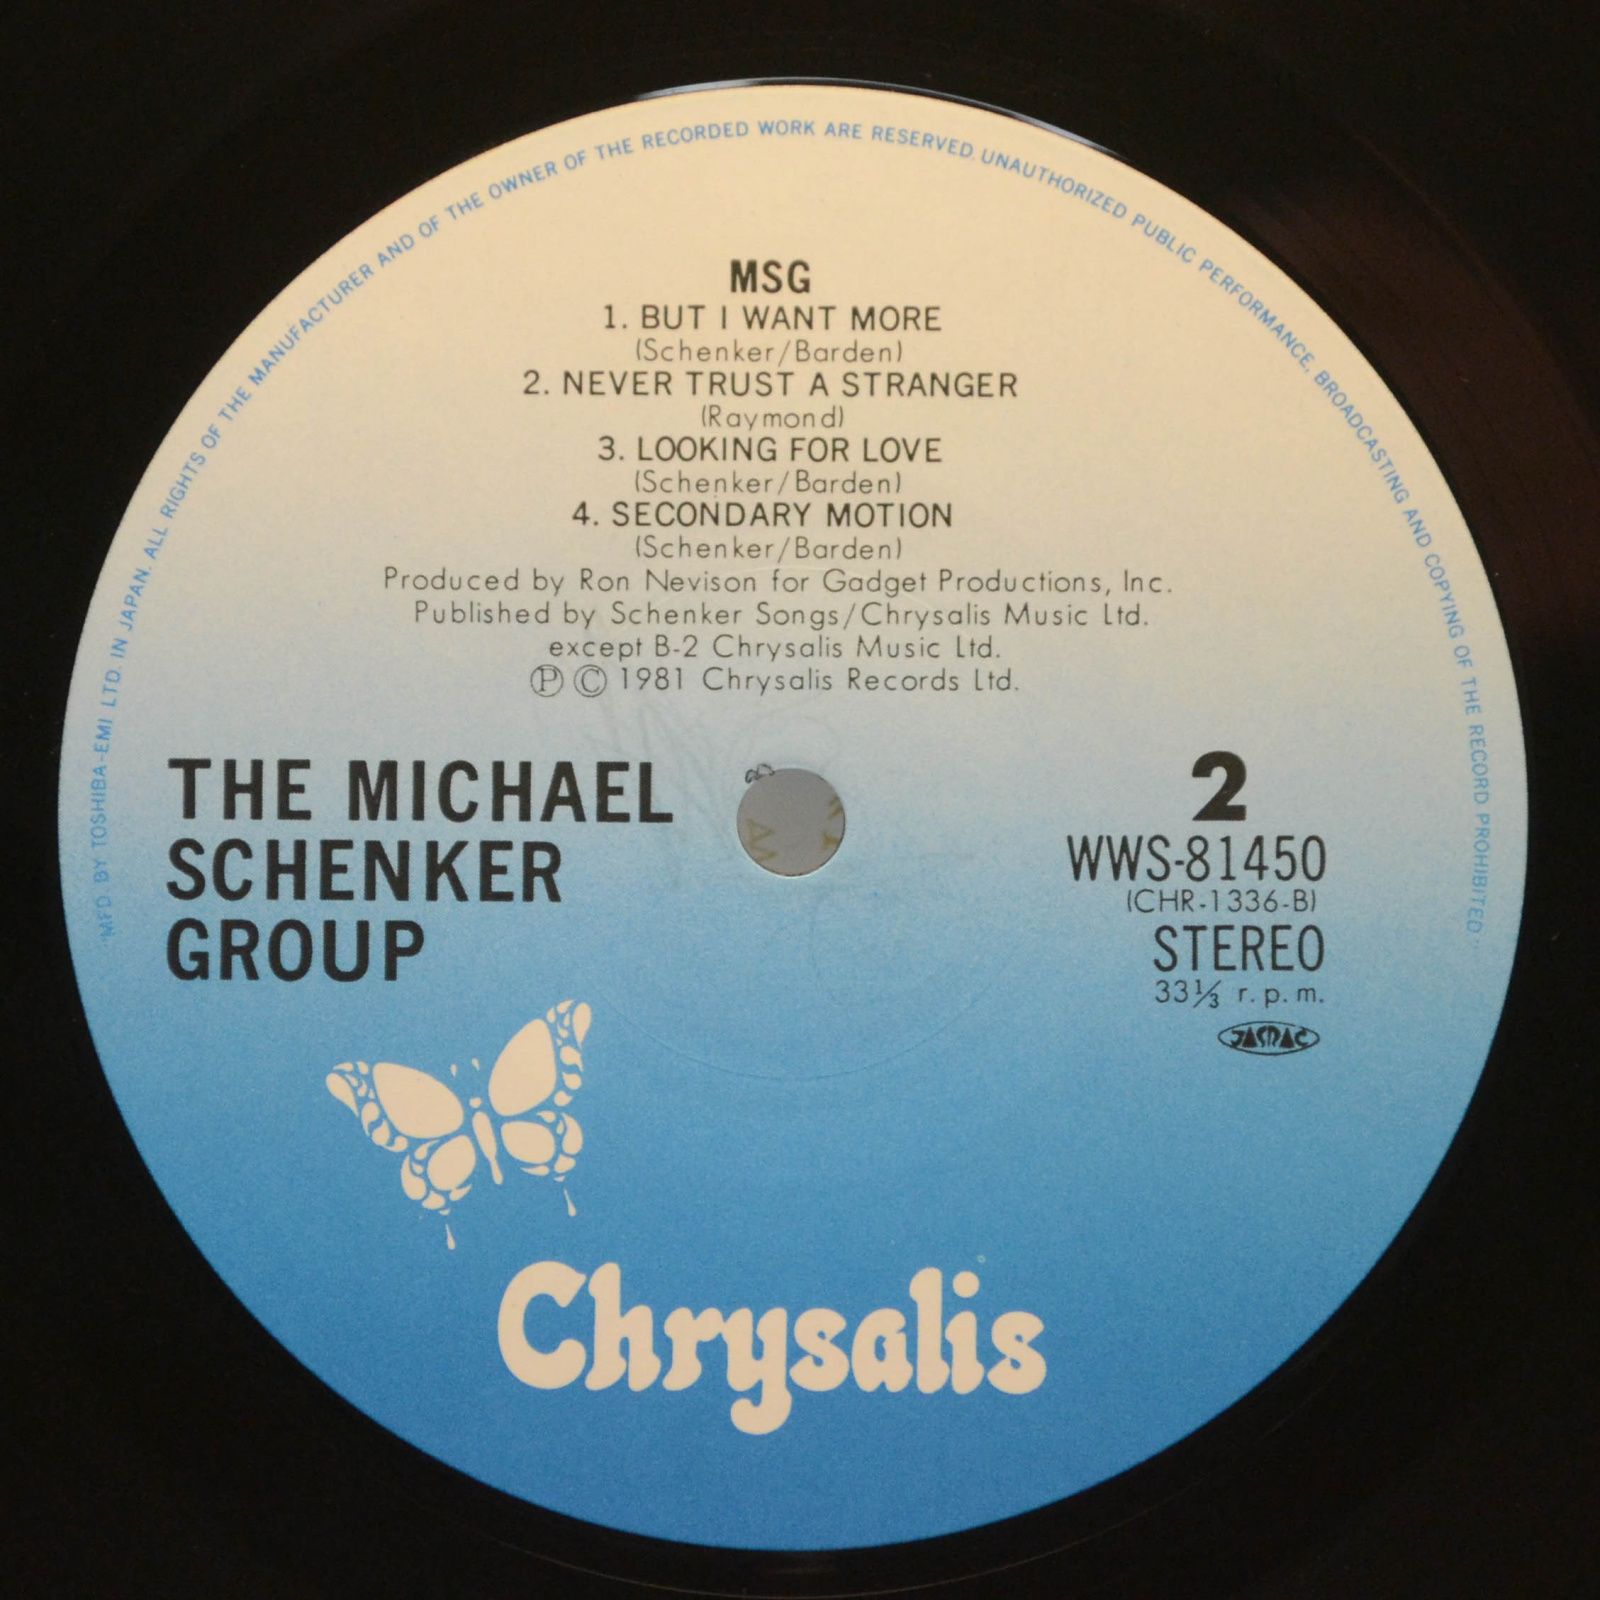 Michael Schenker Group — MSG, 1981